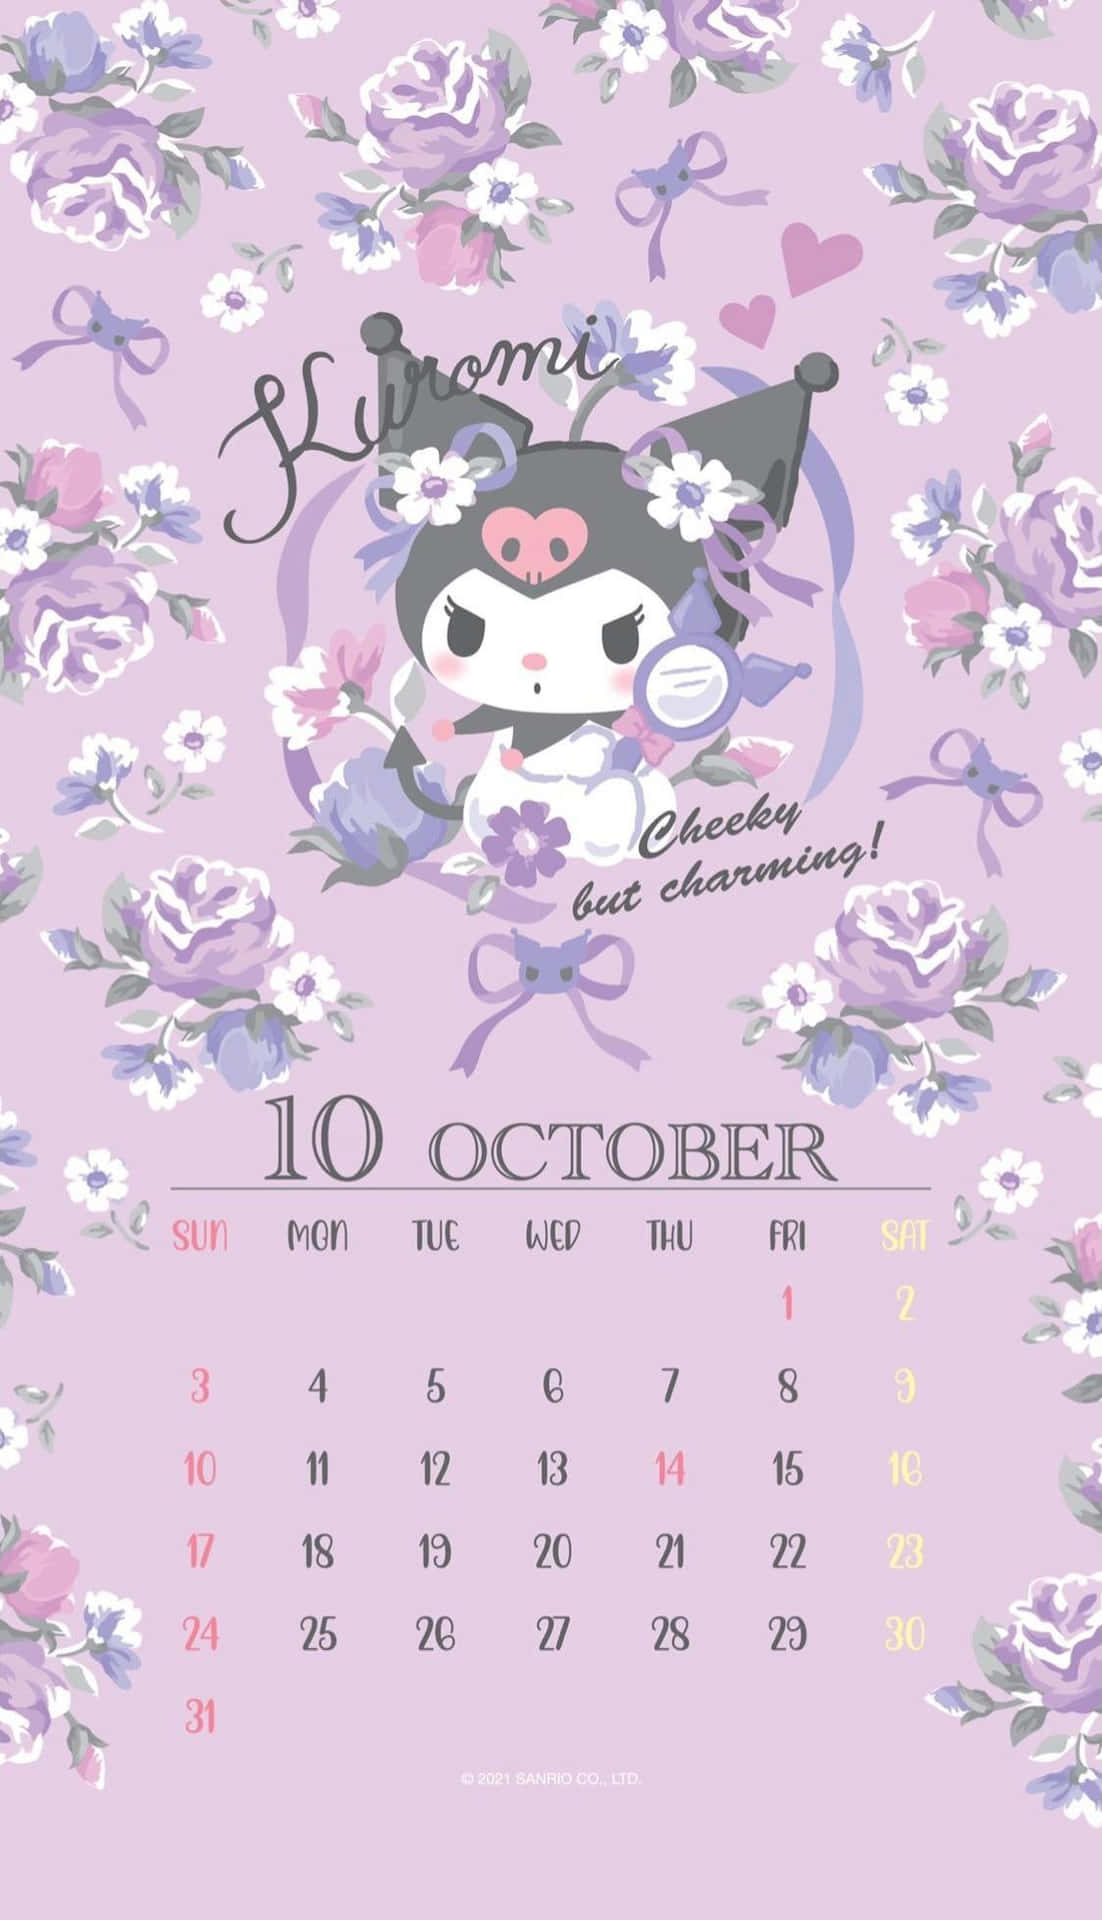 October 2021 Calendar - Stay organized in October Wallpaper